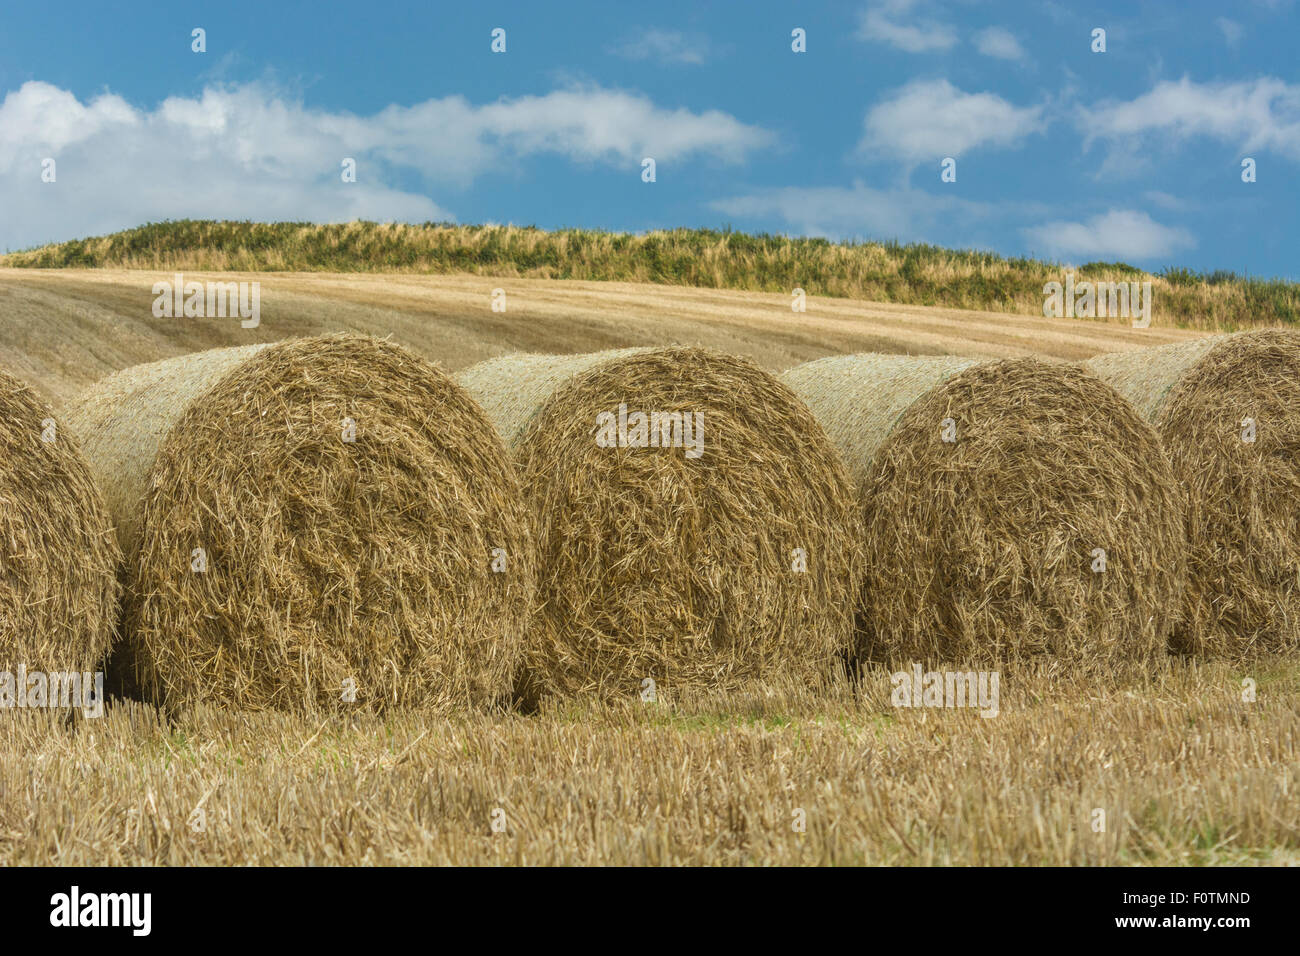 Heu-/Strohballen und stoppel Feld nach der geernteten Getreide. Fokus auf Stirnflächen der Ballen. Metapher Ernährungssicherheit/Anbau von Nahrungsmitteln, landwirtschaftlichen Subventionen. Stockfoto